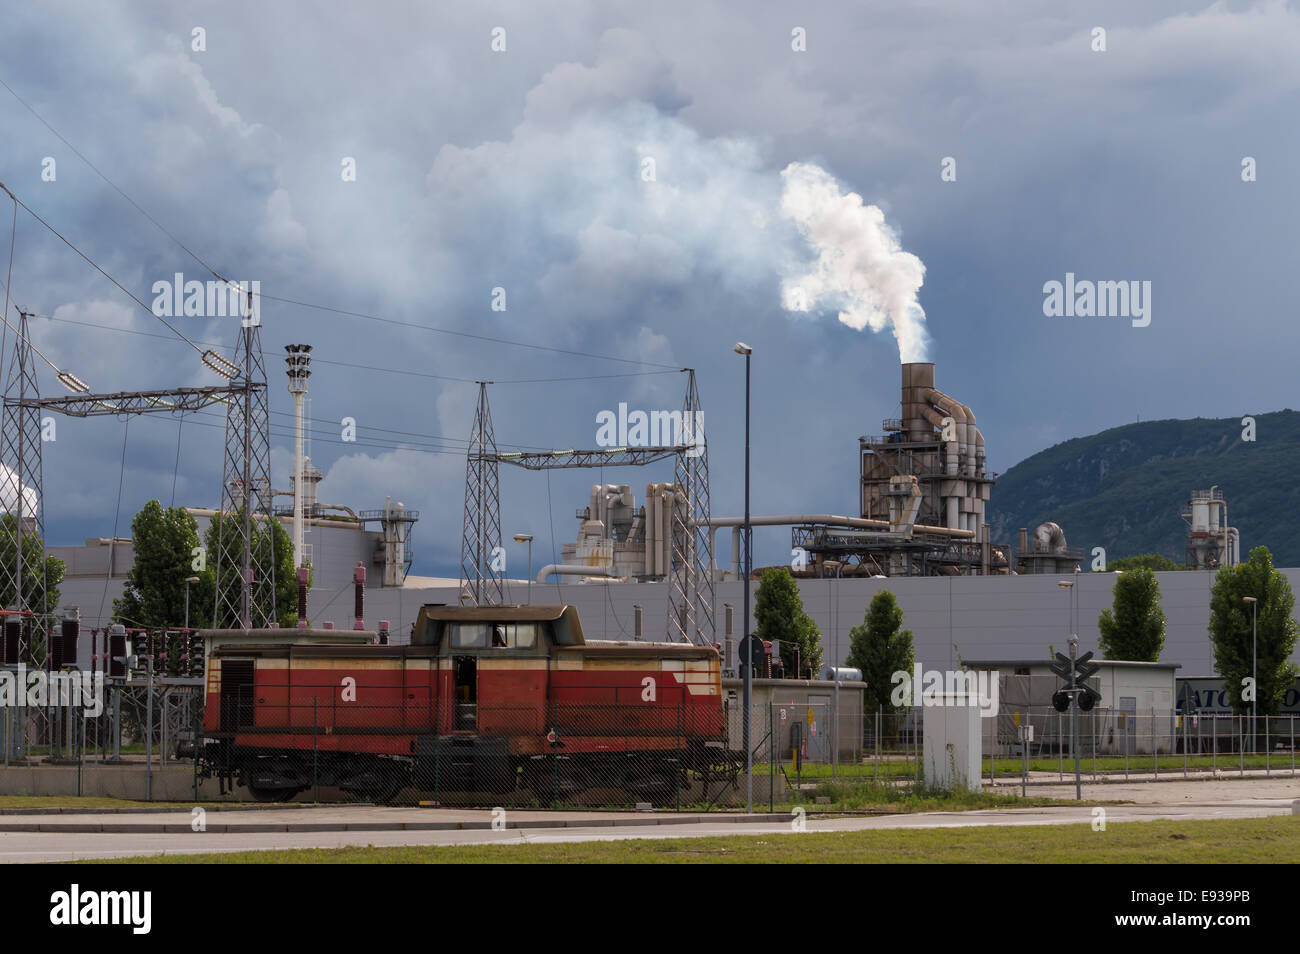 Scena industriale: con il treno e il cielo in tempesta Foto Stock